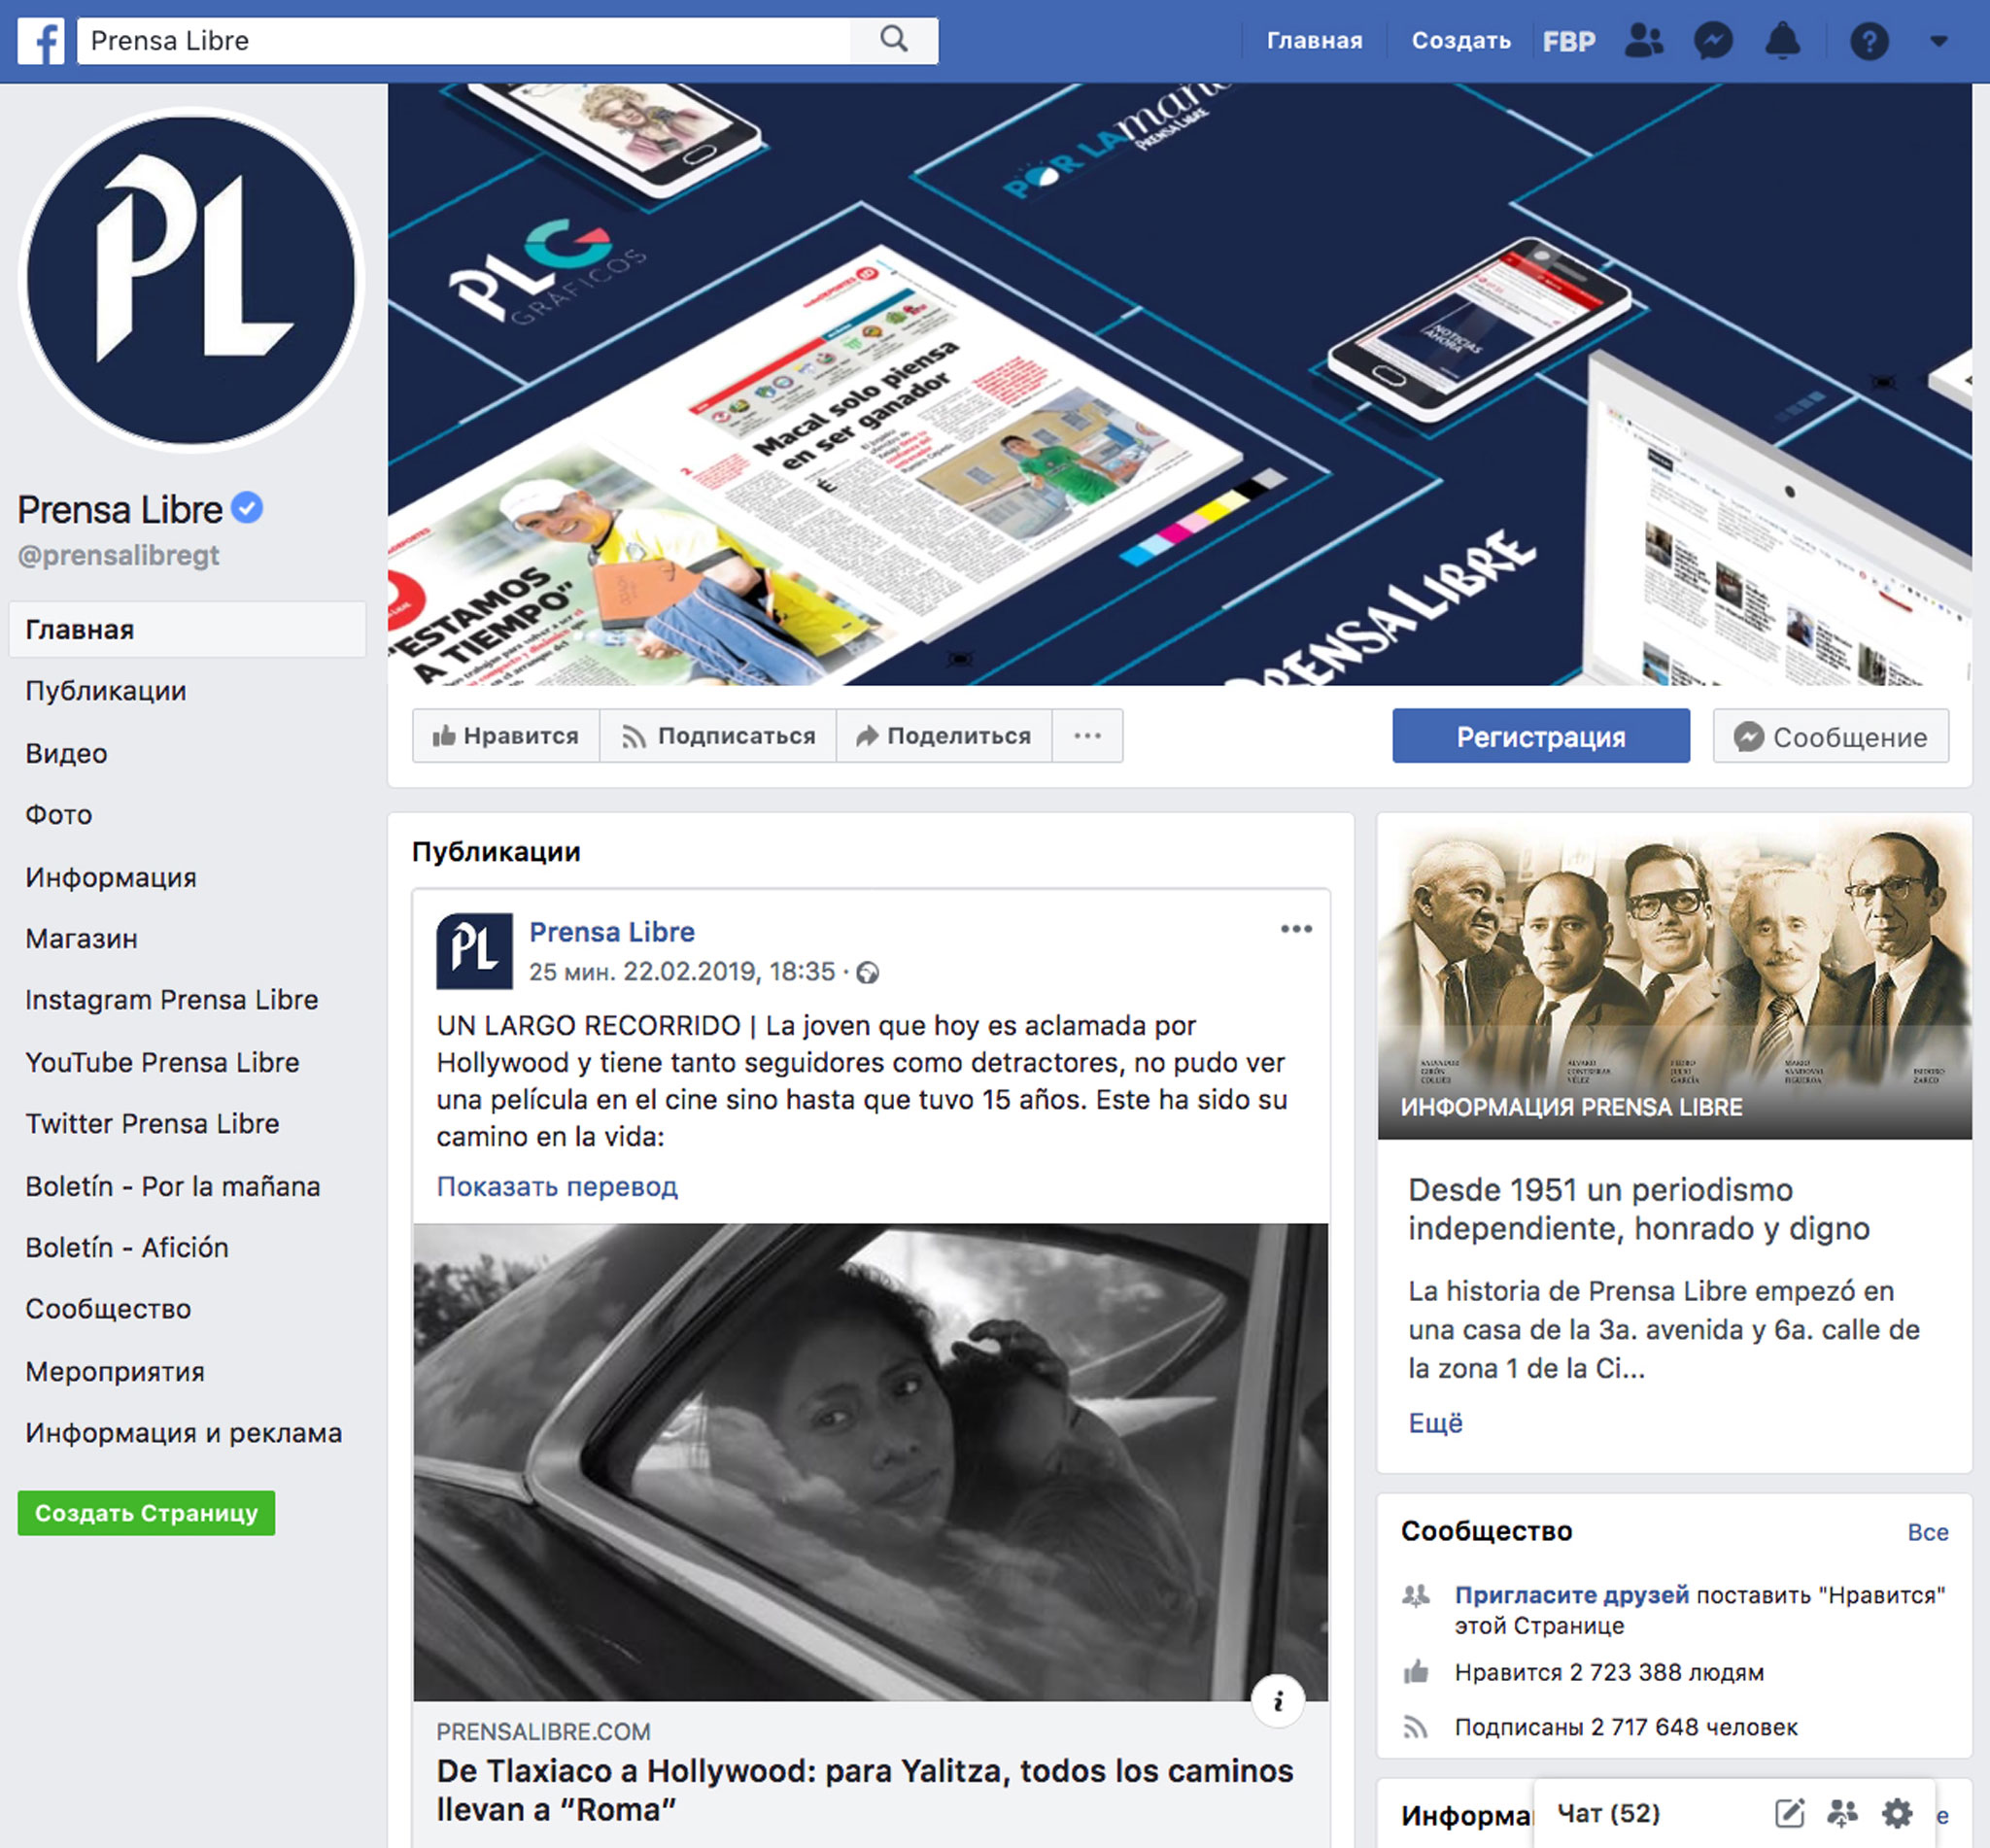 На страницу Prensa Libre в Facebook подписаны 2,7 млн человек